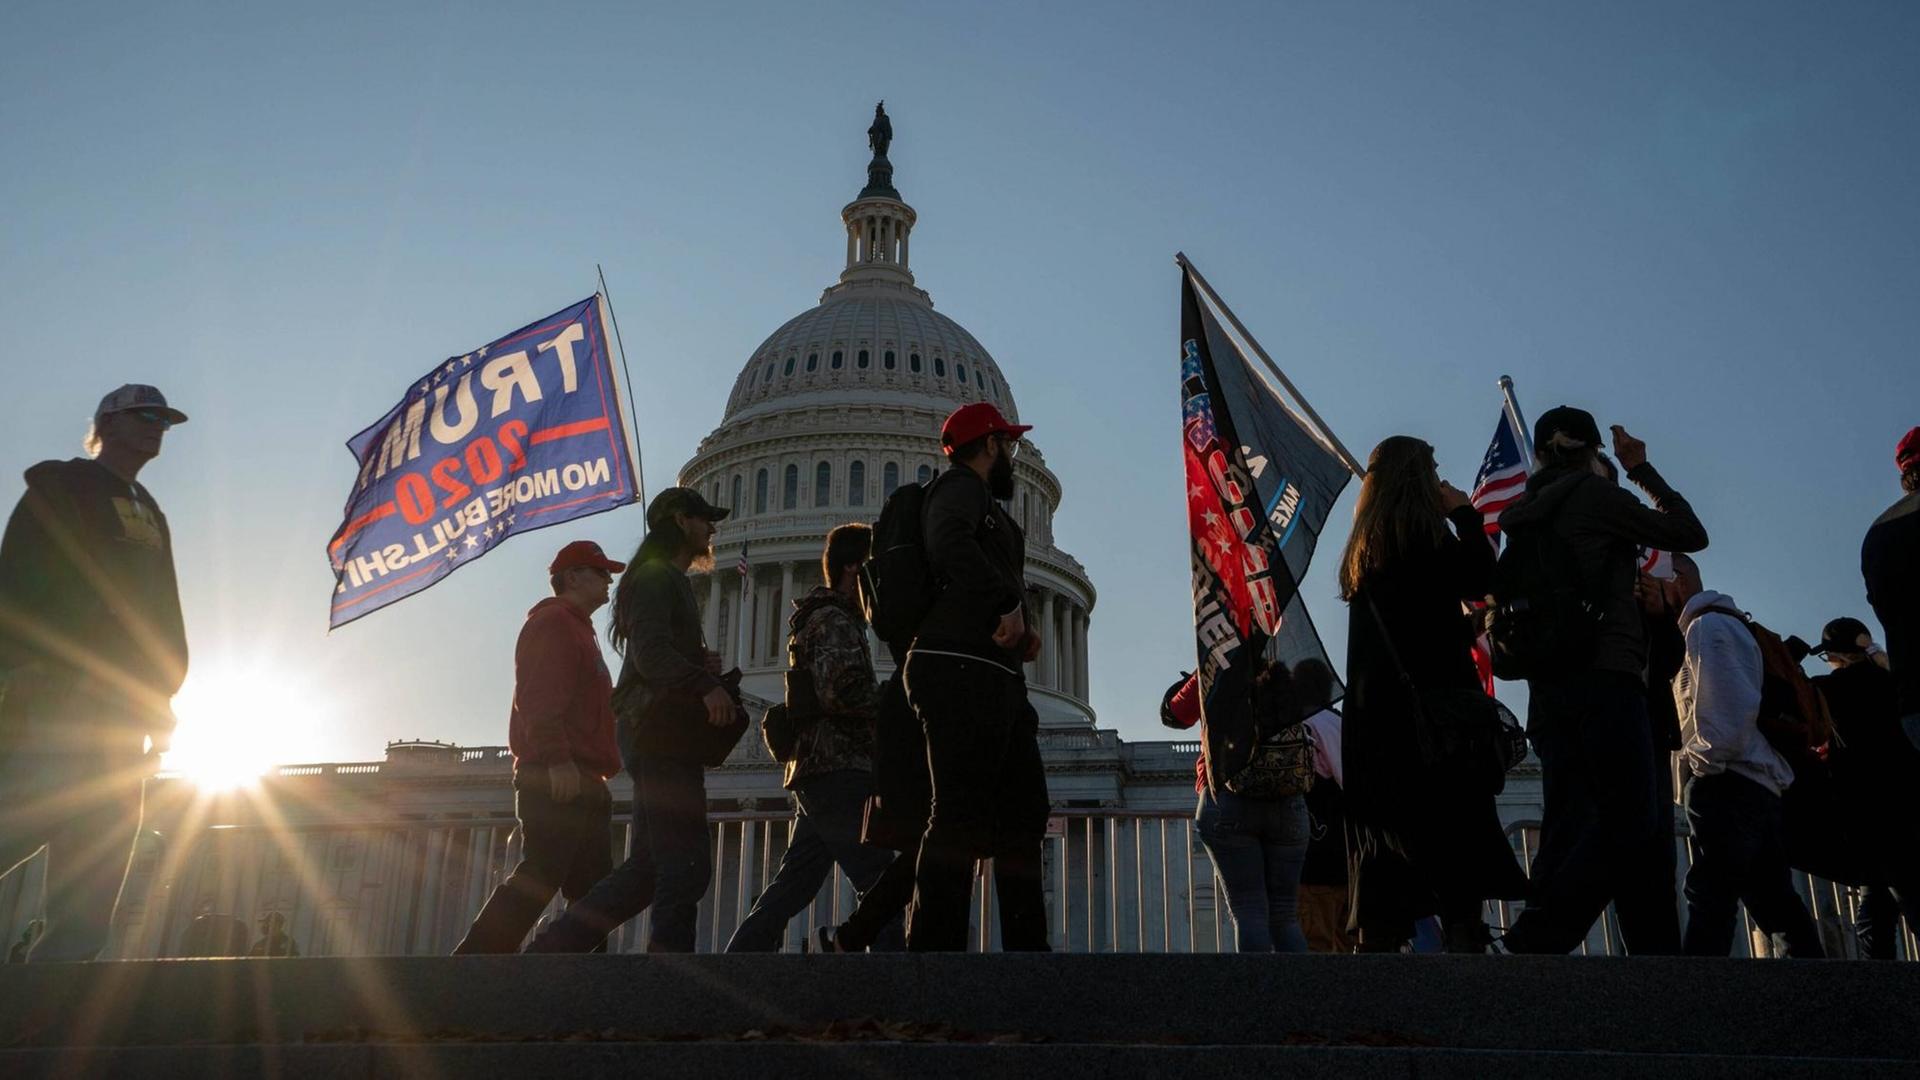 Protestierende beim "Million MAGA March", die mit Trump-Flaggen vor dem Kapitol in Washington gegen die Abwahl von Donald Trump demonstrieren, aufgenommen am 14. November 2020.